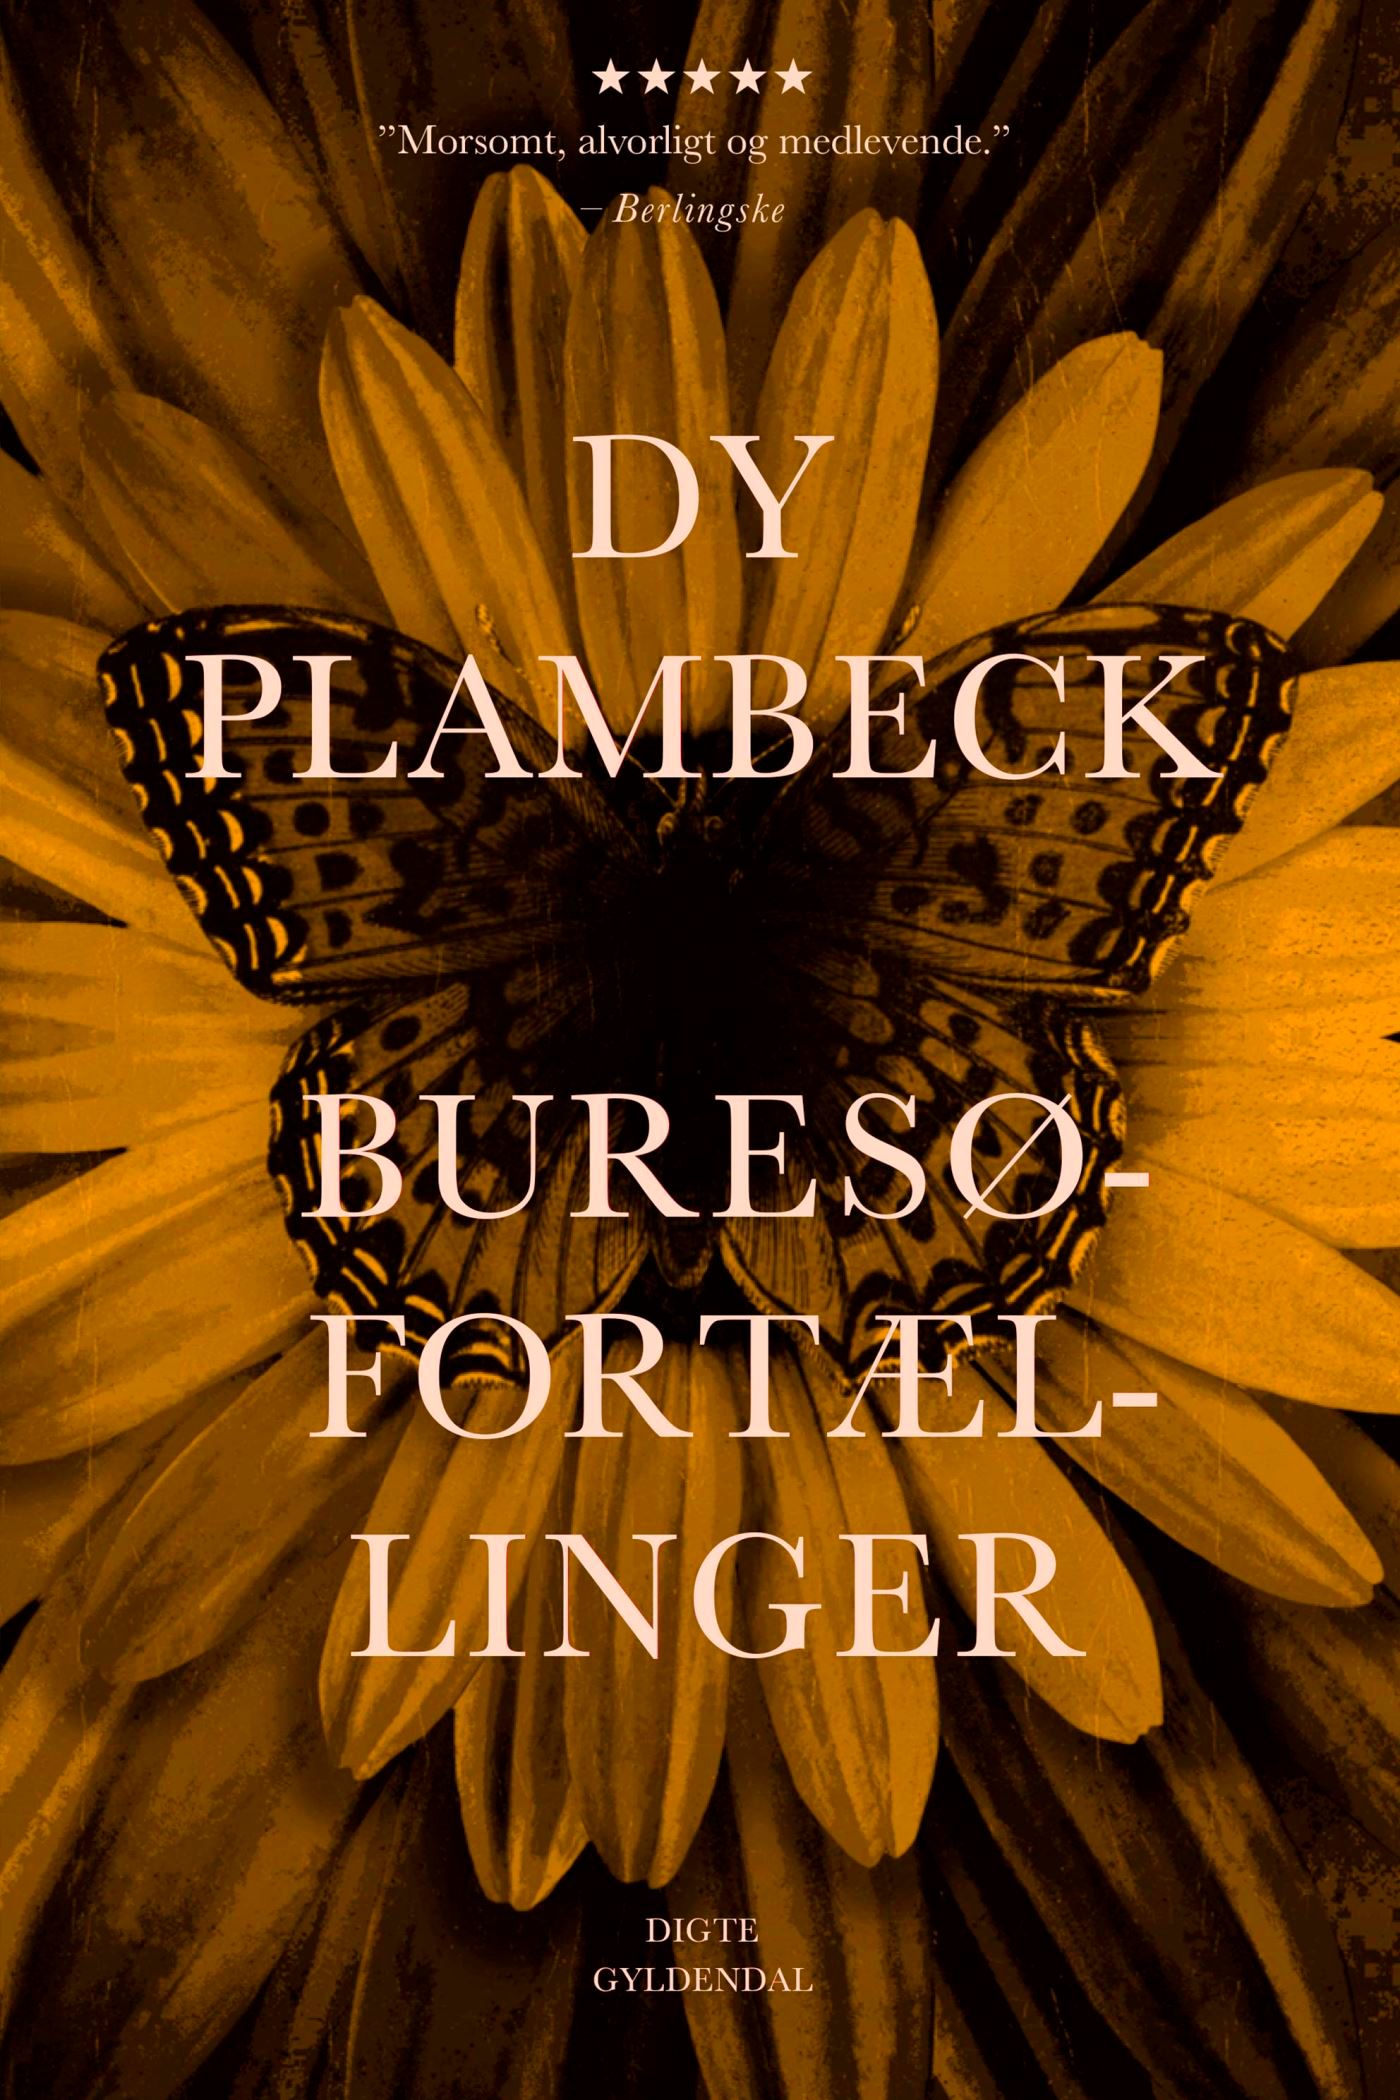 Buresø-fortællinger, eBook by Dy Plambeck